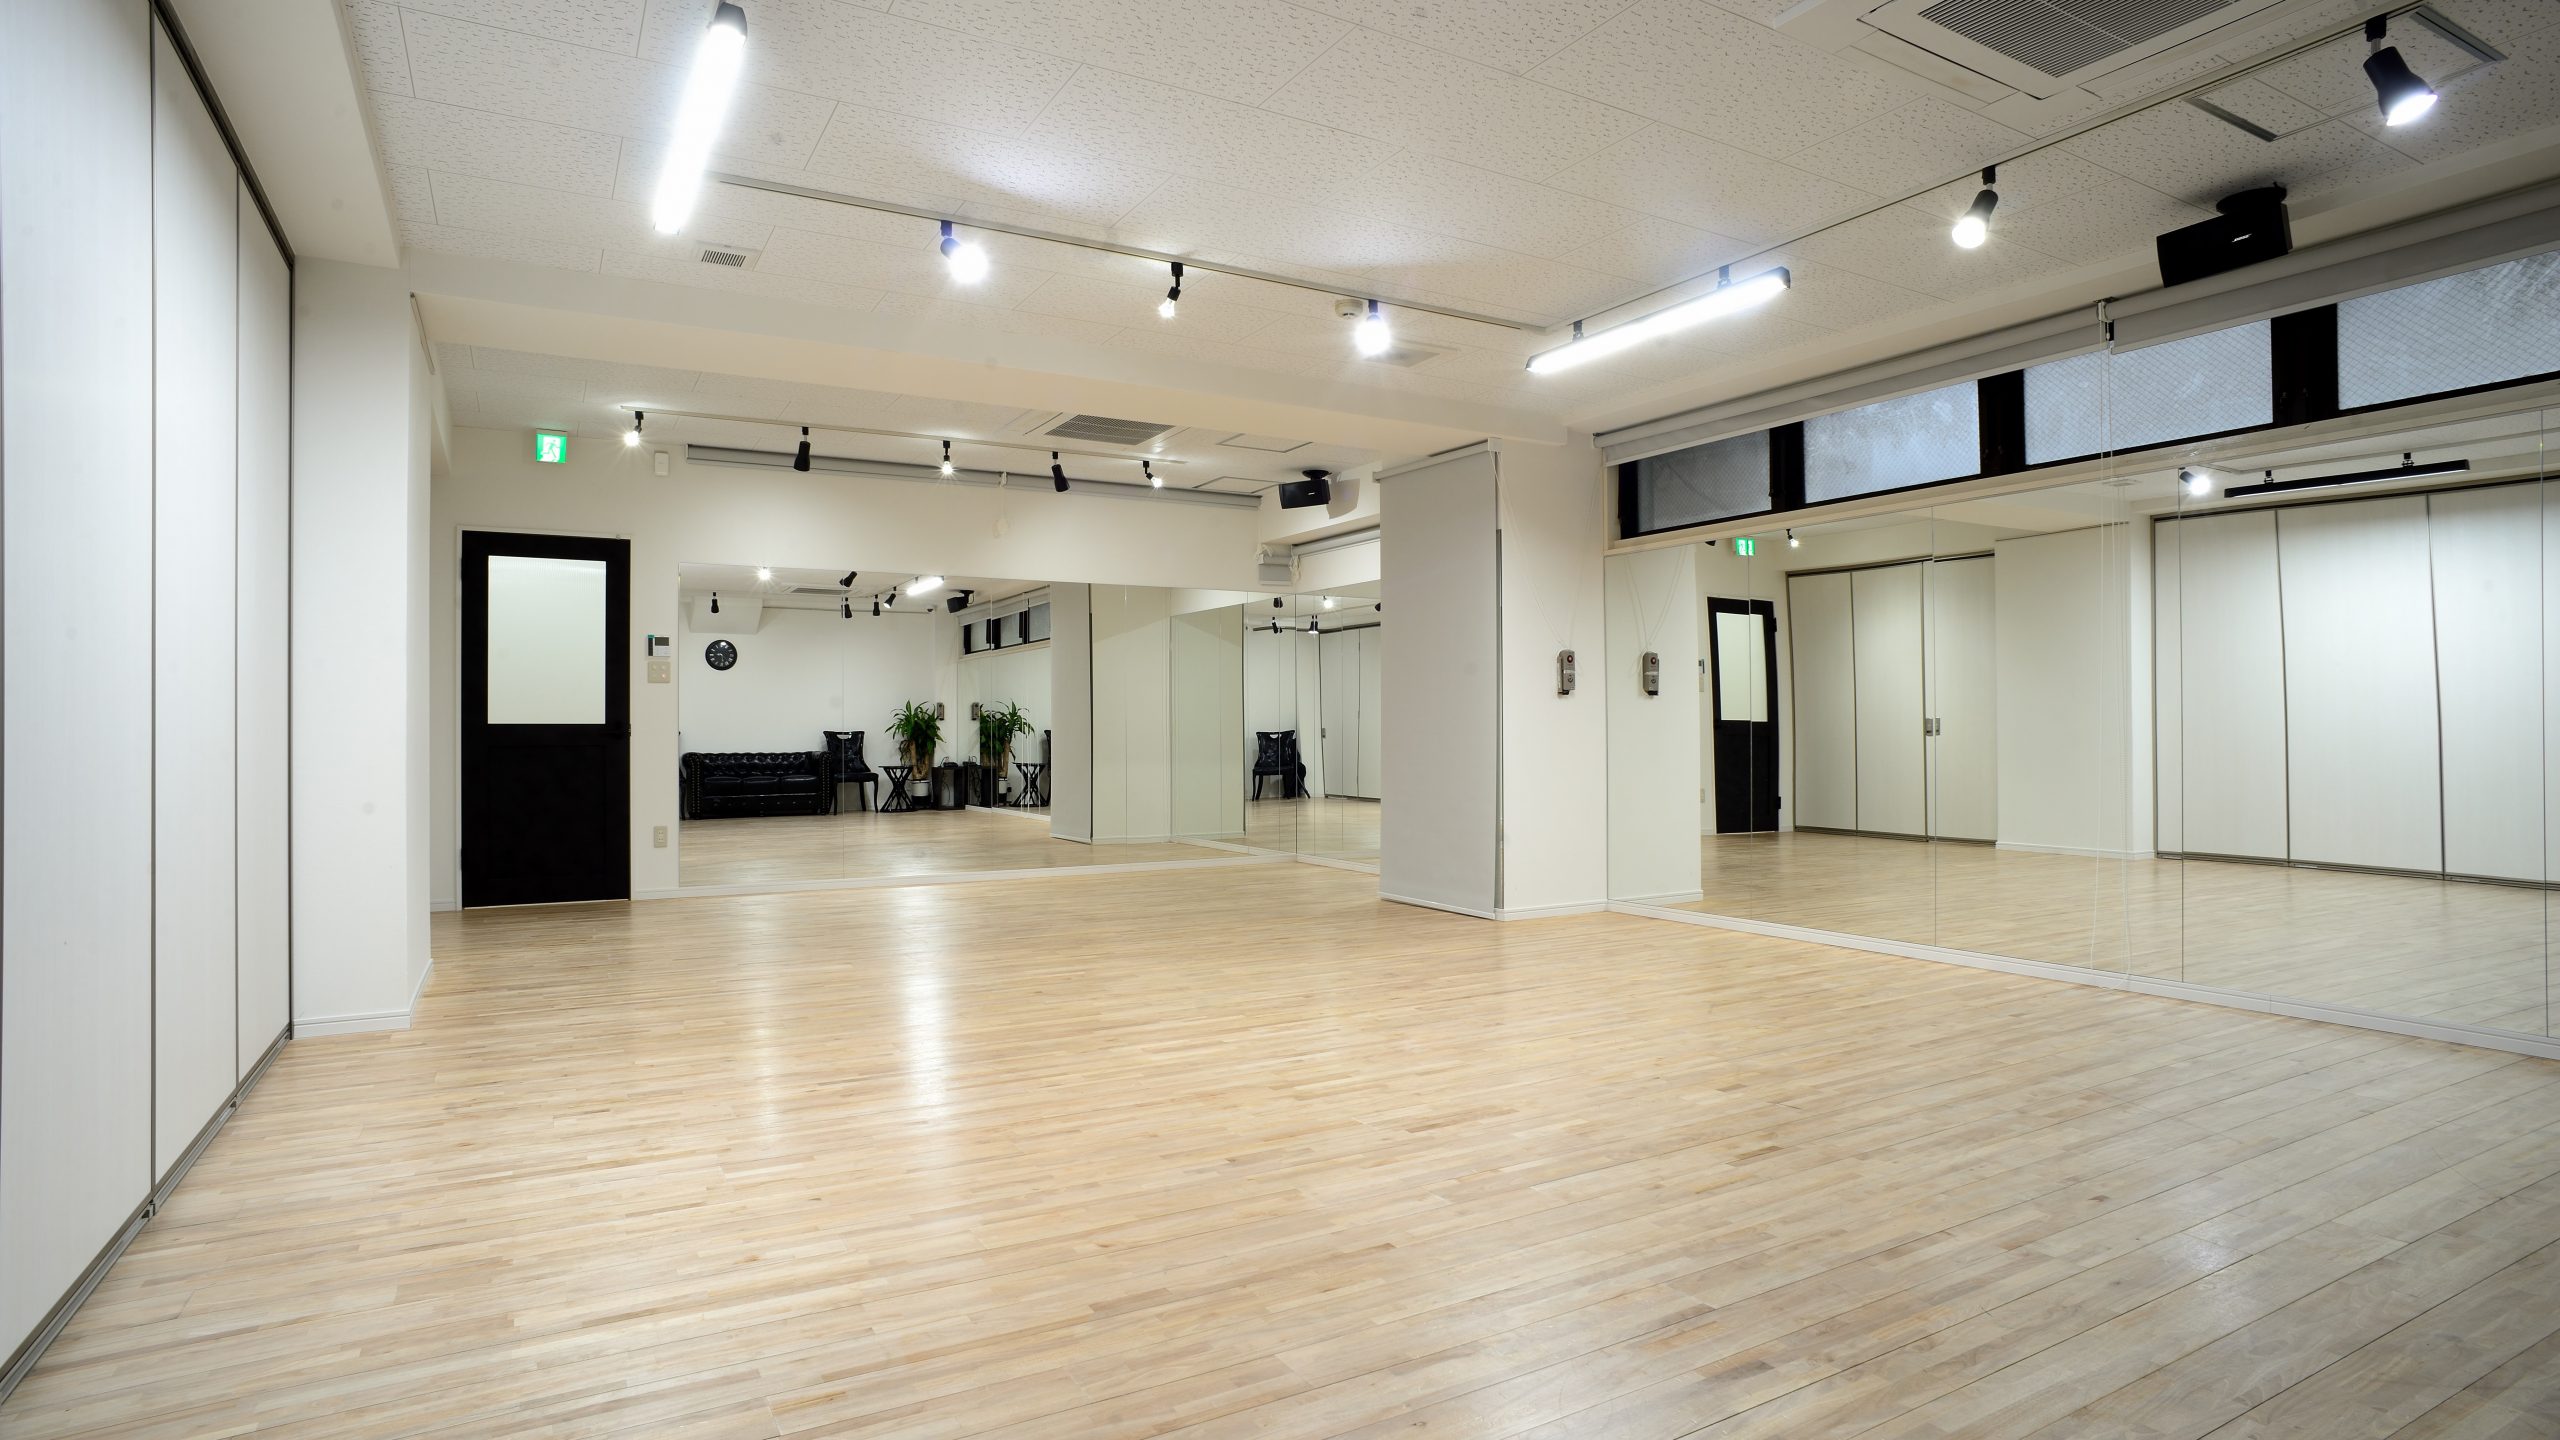 池袋駅そばのレンタルスペース・貸し会議室「池袋レンタルスタジオ Studio M Ikebukuro Tokyo」のイメージ画像